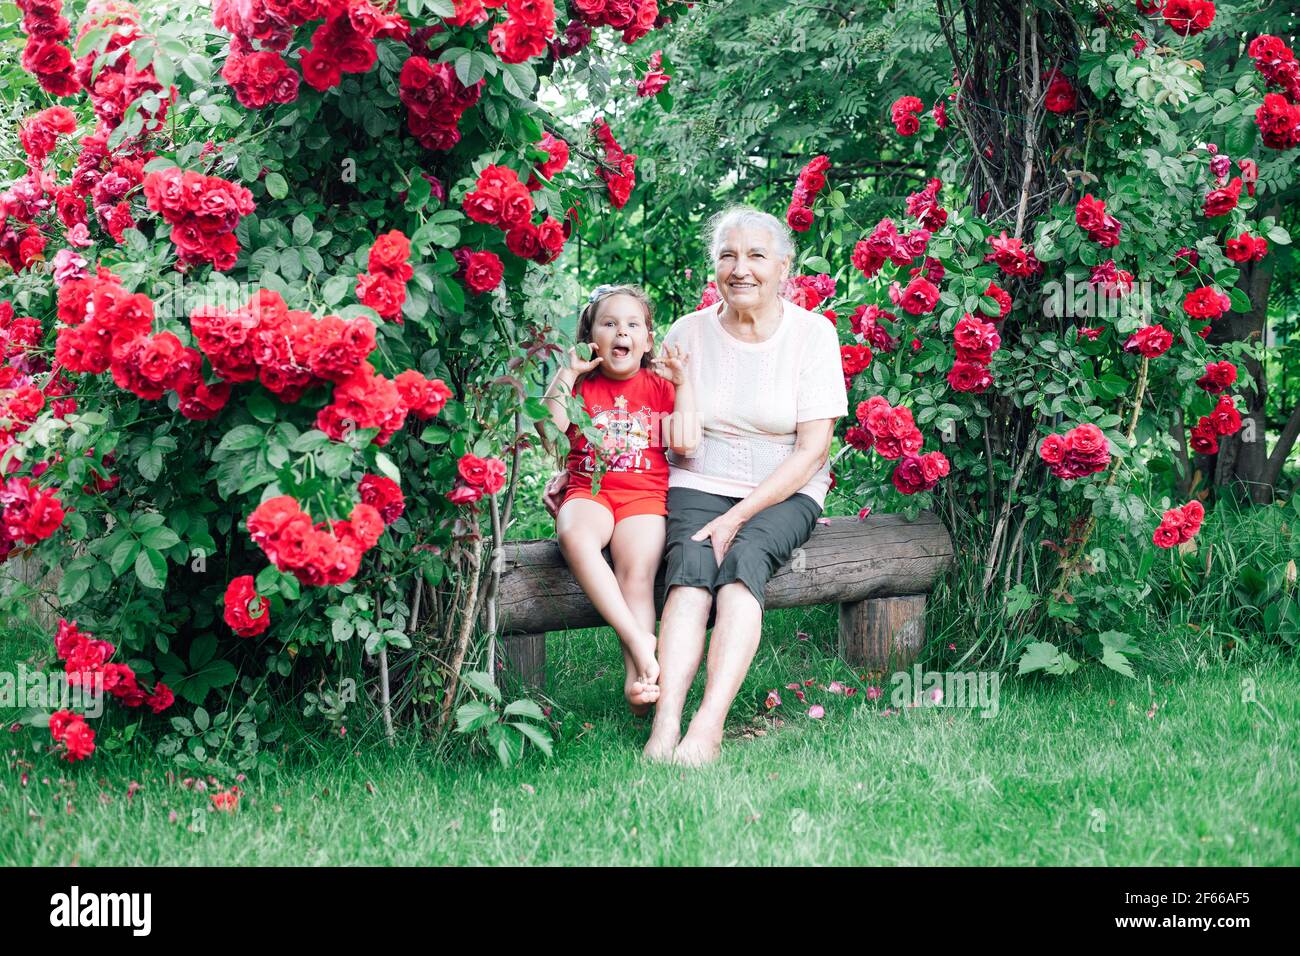 una vecchia nonna dai capelli grigi siede a piedi nudi su una panchina sotto l'arco della sposa con la nipote con lei linguetta che si aggende e gioca Foto Stock